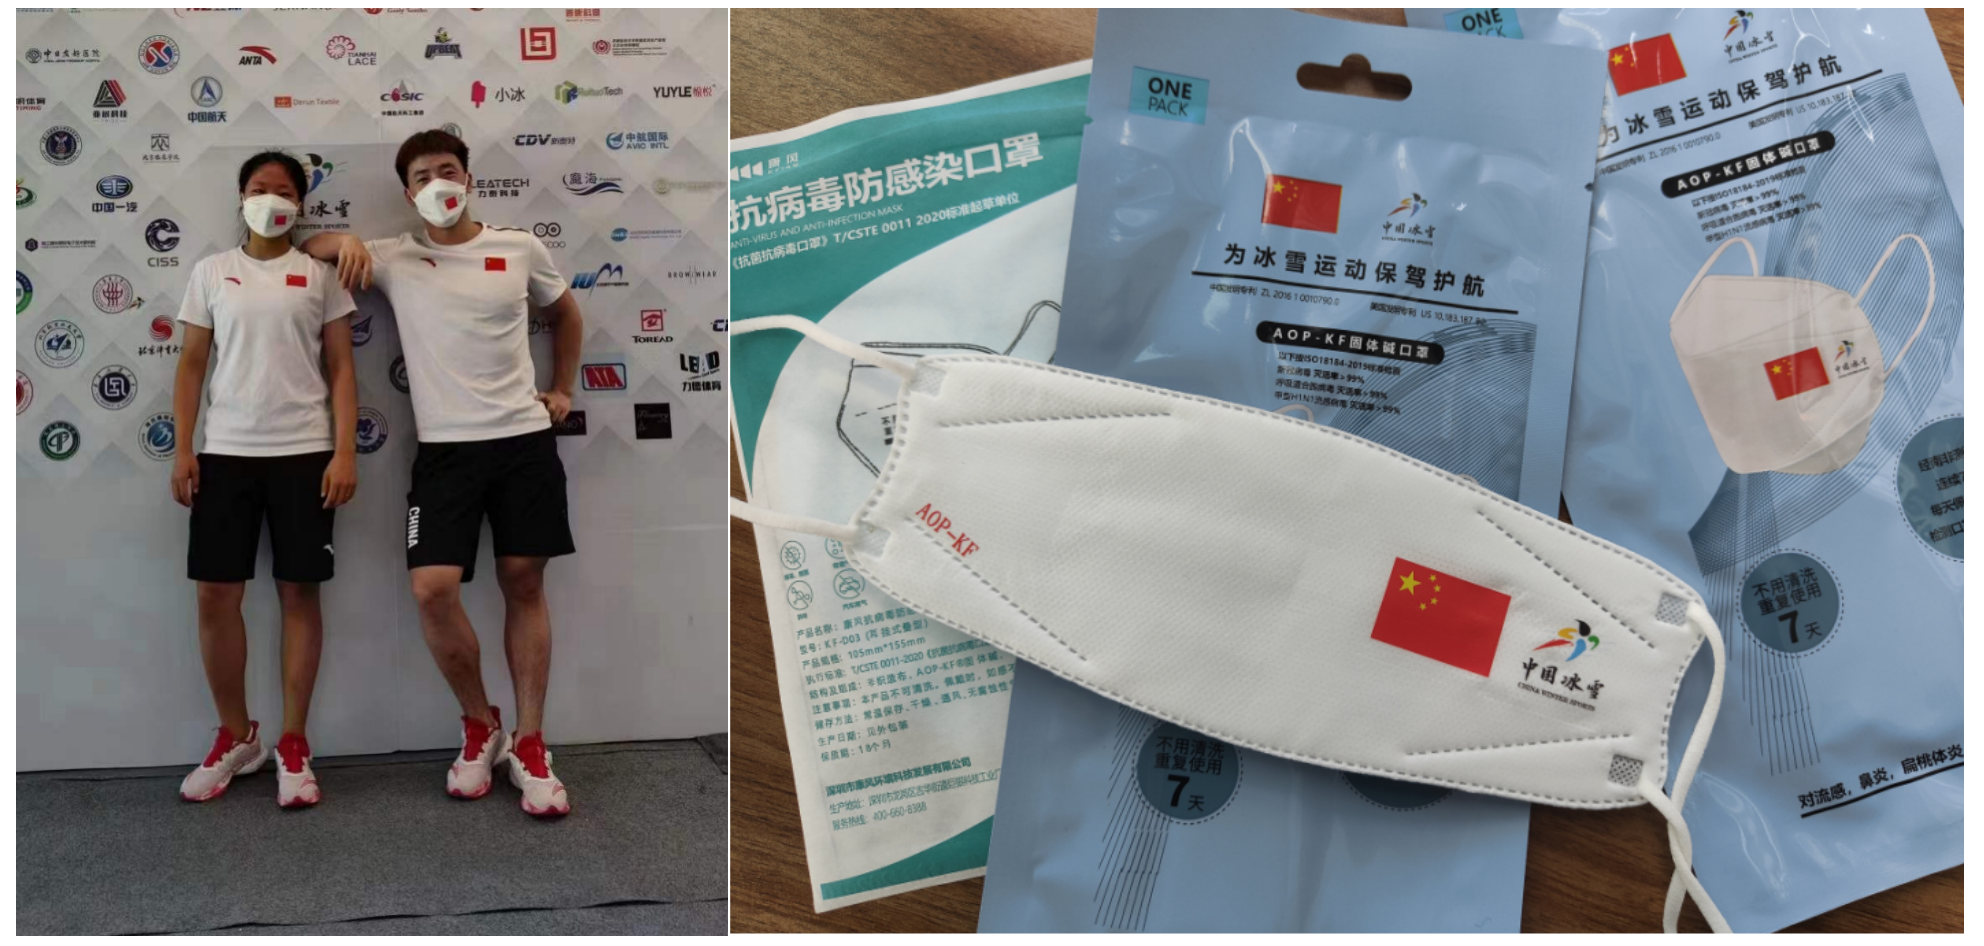 中国冰雪运动员佩戴的AOP-KF固体碱口罩